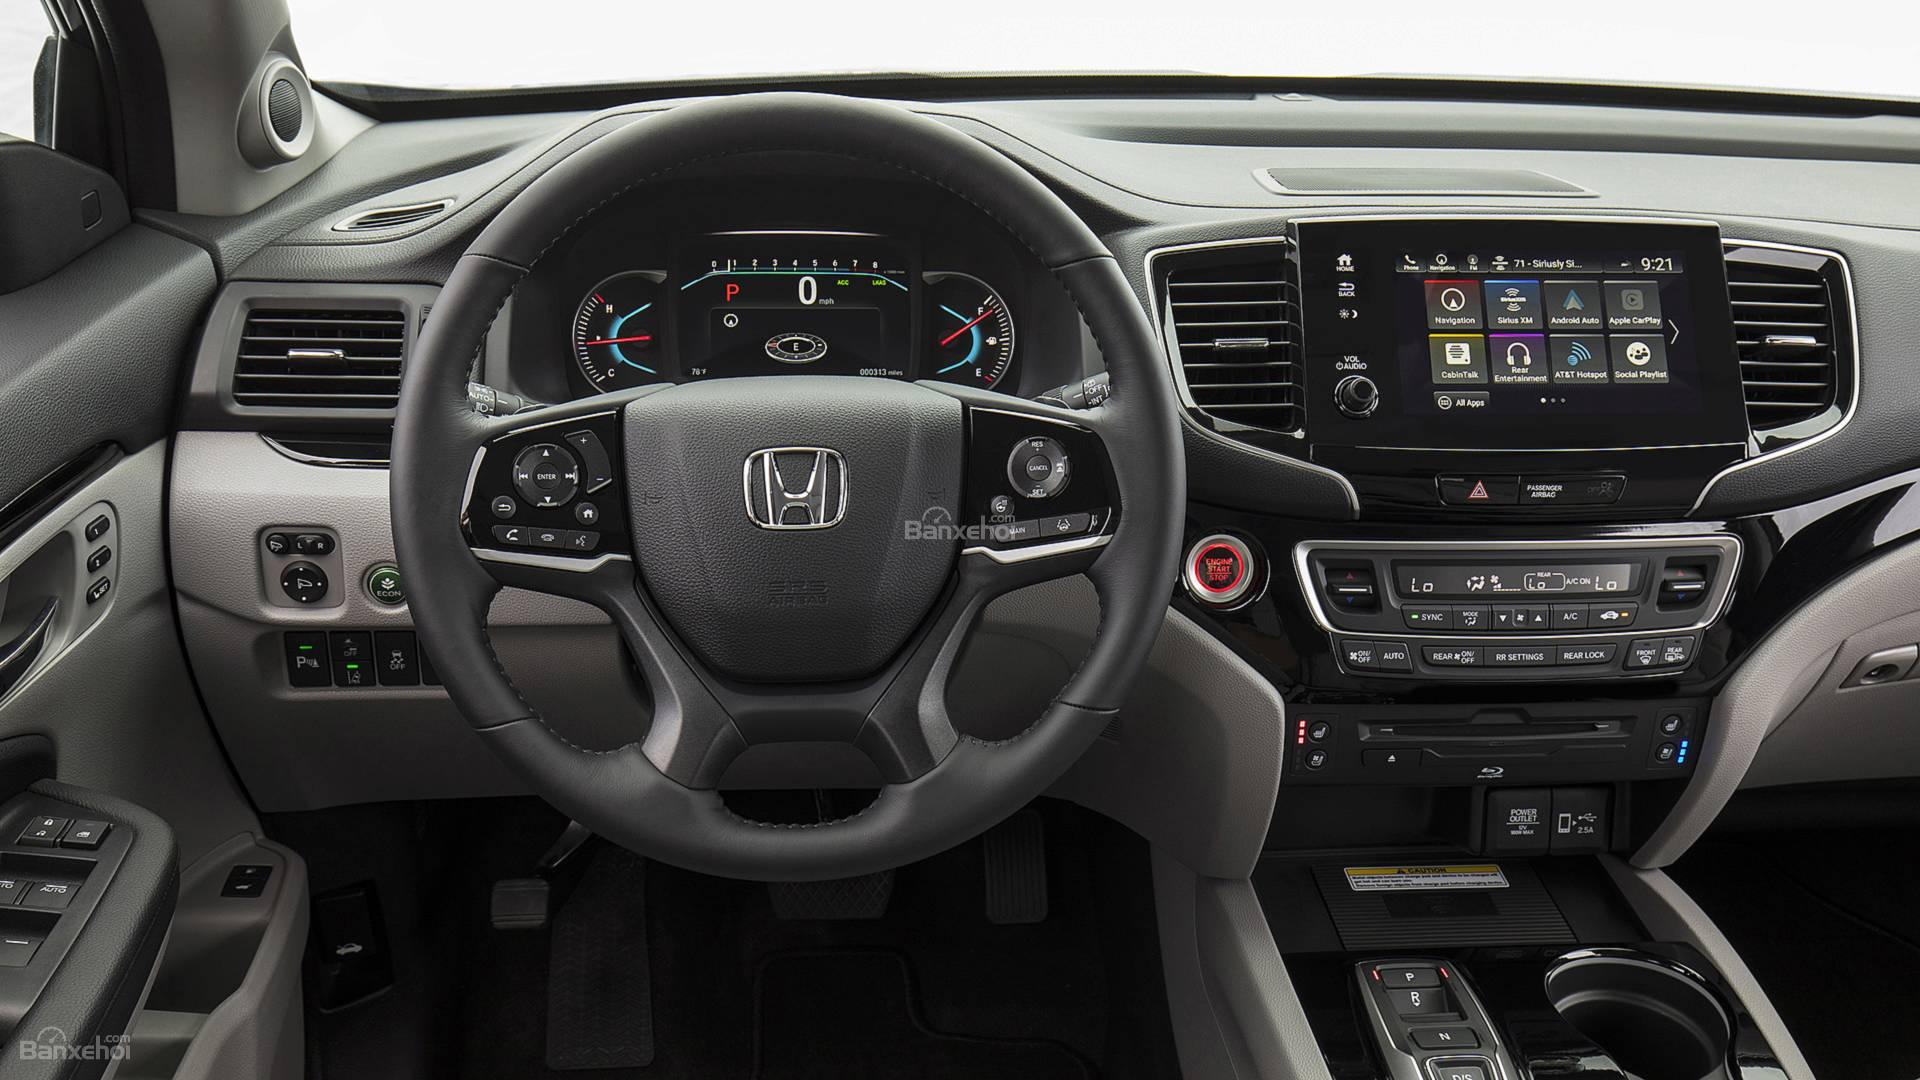 Đánh giá xe Honda Pilot 2019 về trang bị tiện nghi 1.